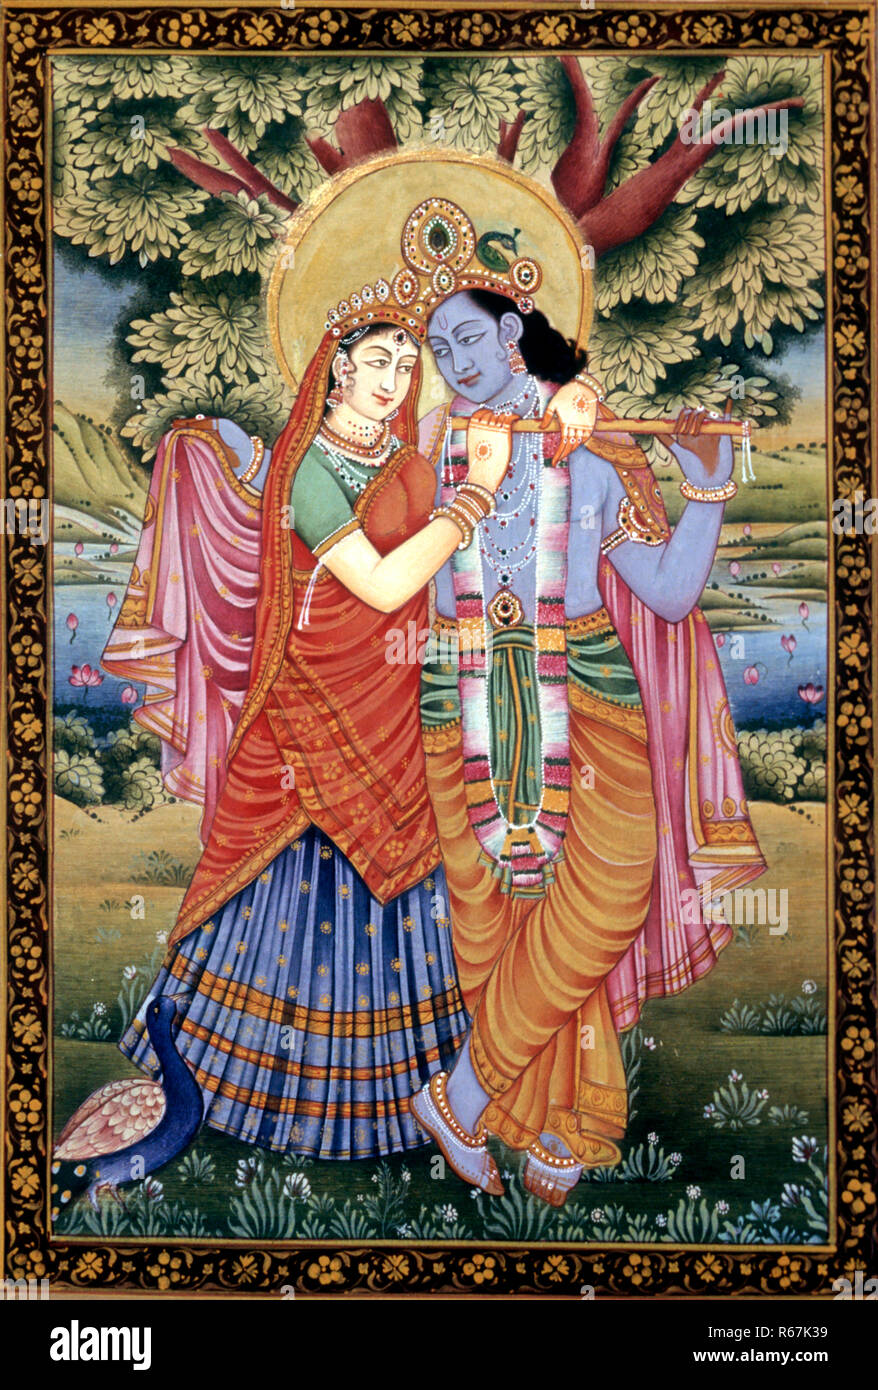 Radha and Krishna love scene miniature painting on paper Stock Photo